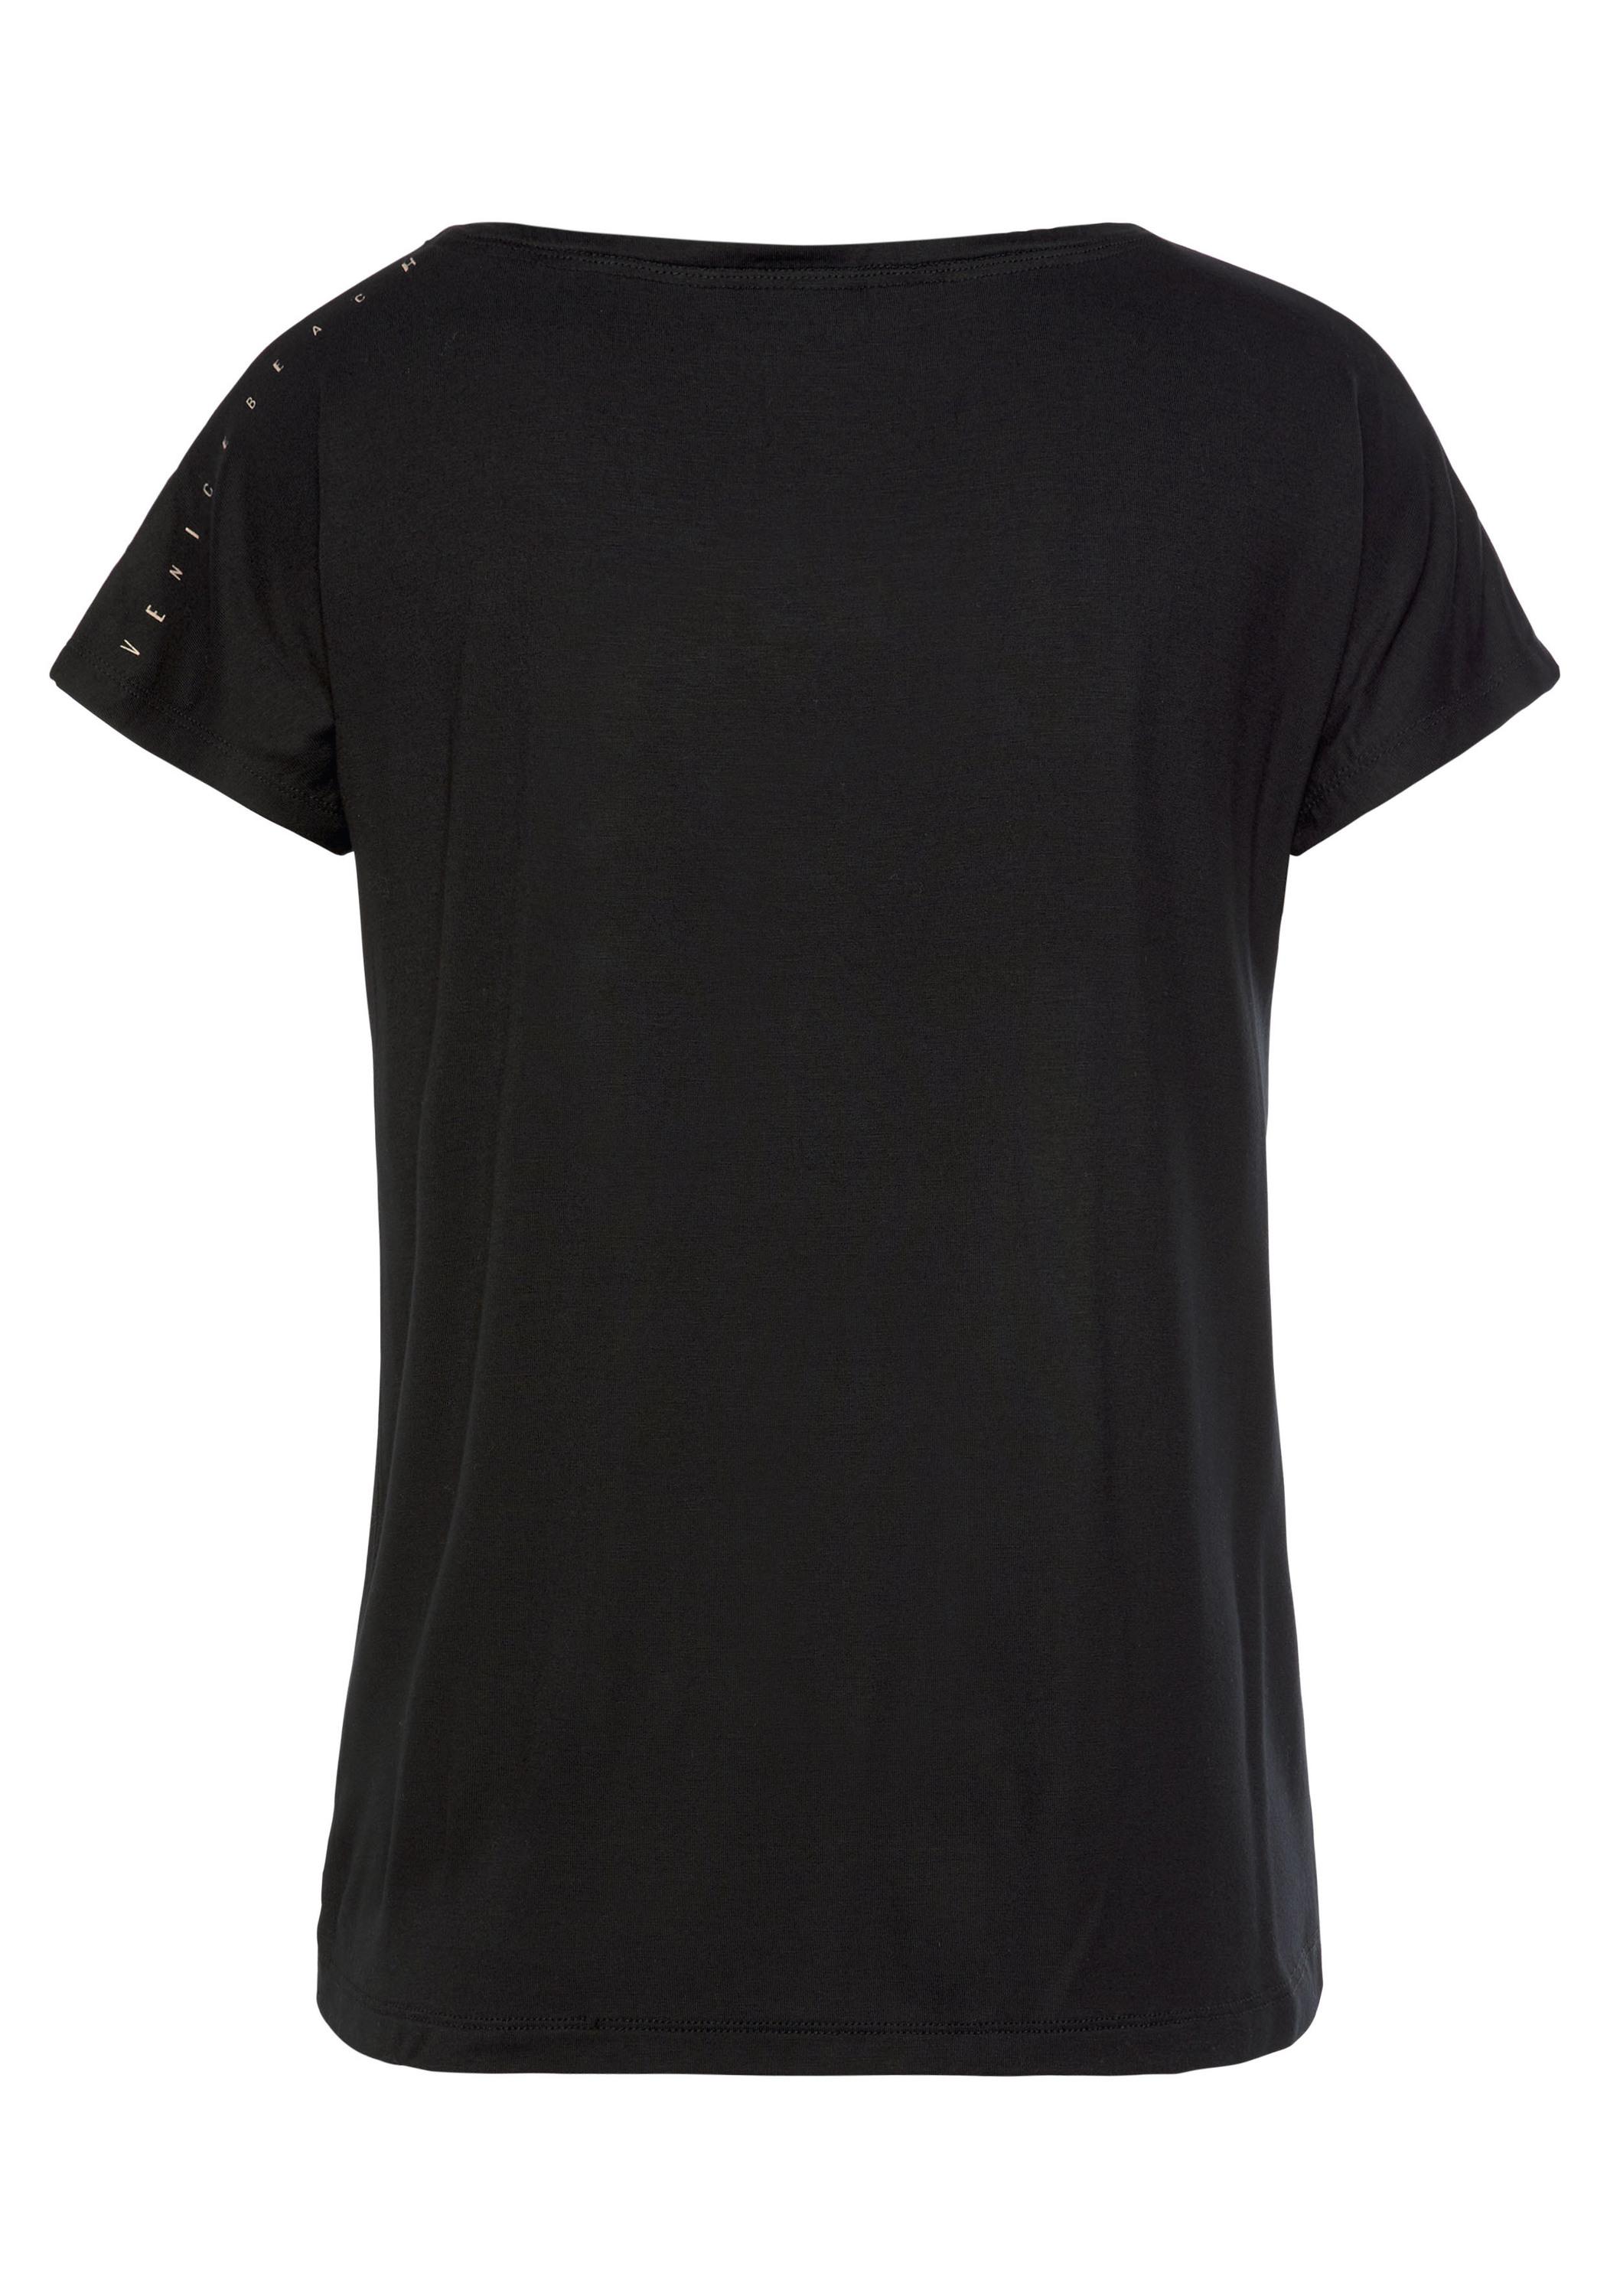 VENICE BEACH T-Shirt Damen schwarz im Online Shop von SportScheck kaufen